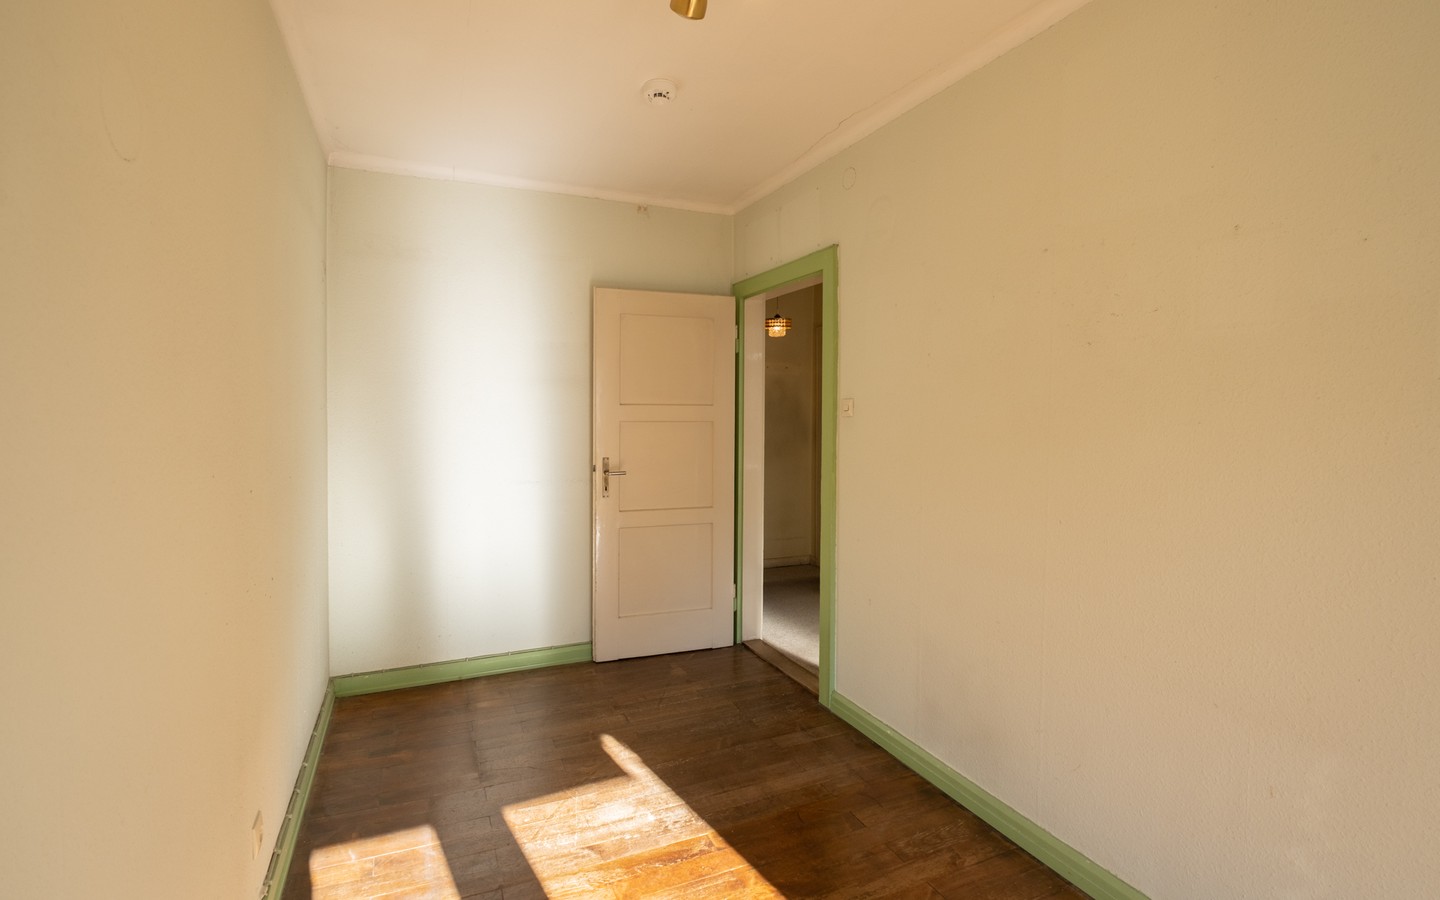 Zimmer 3 - Seltene Gelegenheit in HD-Neuenheim: Bezugsfreie 3-Zimmer-Wohnung mit Loggia in zentraler Lage